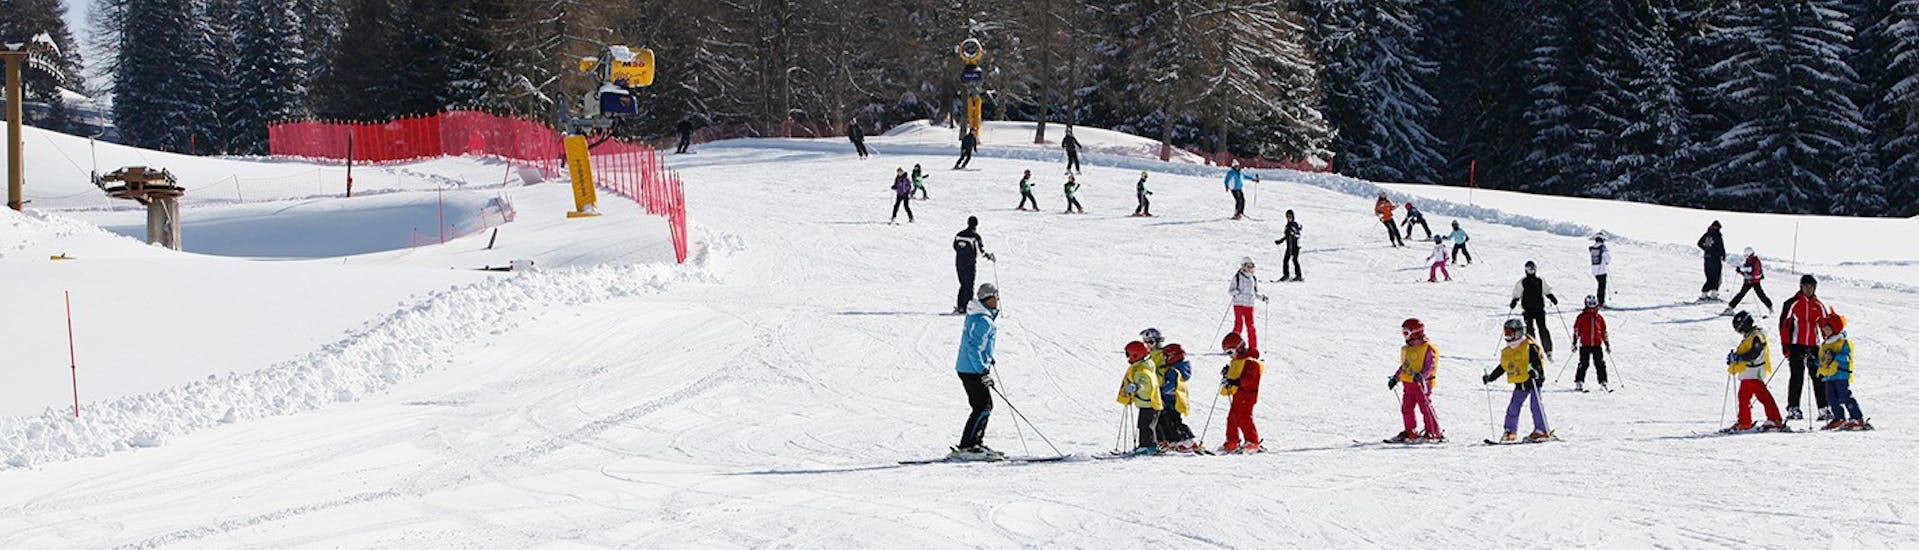 Pista innevata dove si tengono le Lezioni di sci per bambini (6-14 anni) per tutti i livelli- Mezza giornata con Scuola Italiana Sci Folgaria-Fondo Grande.